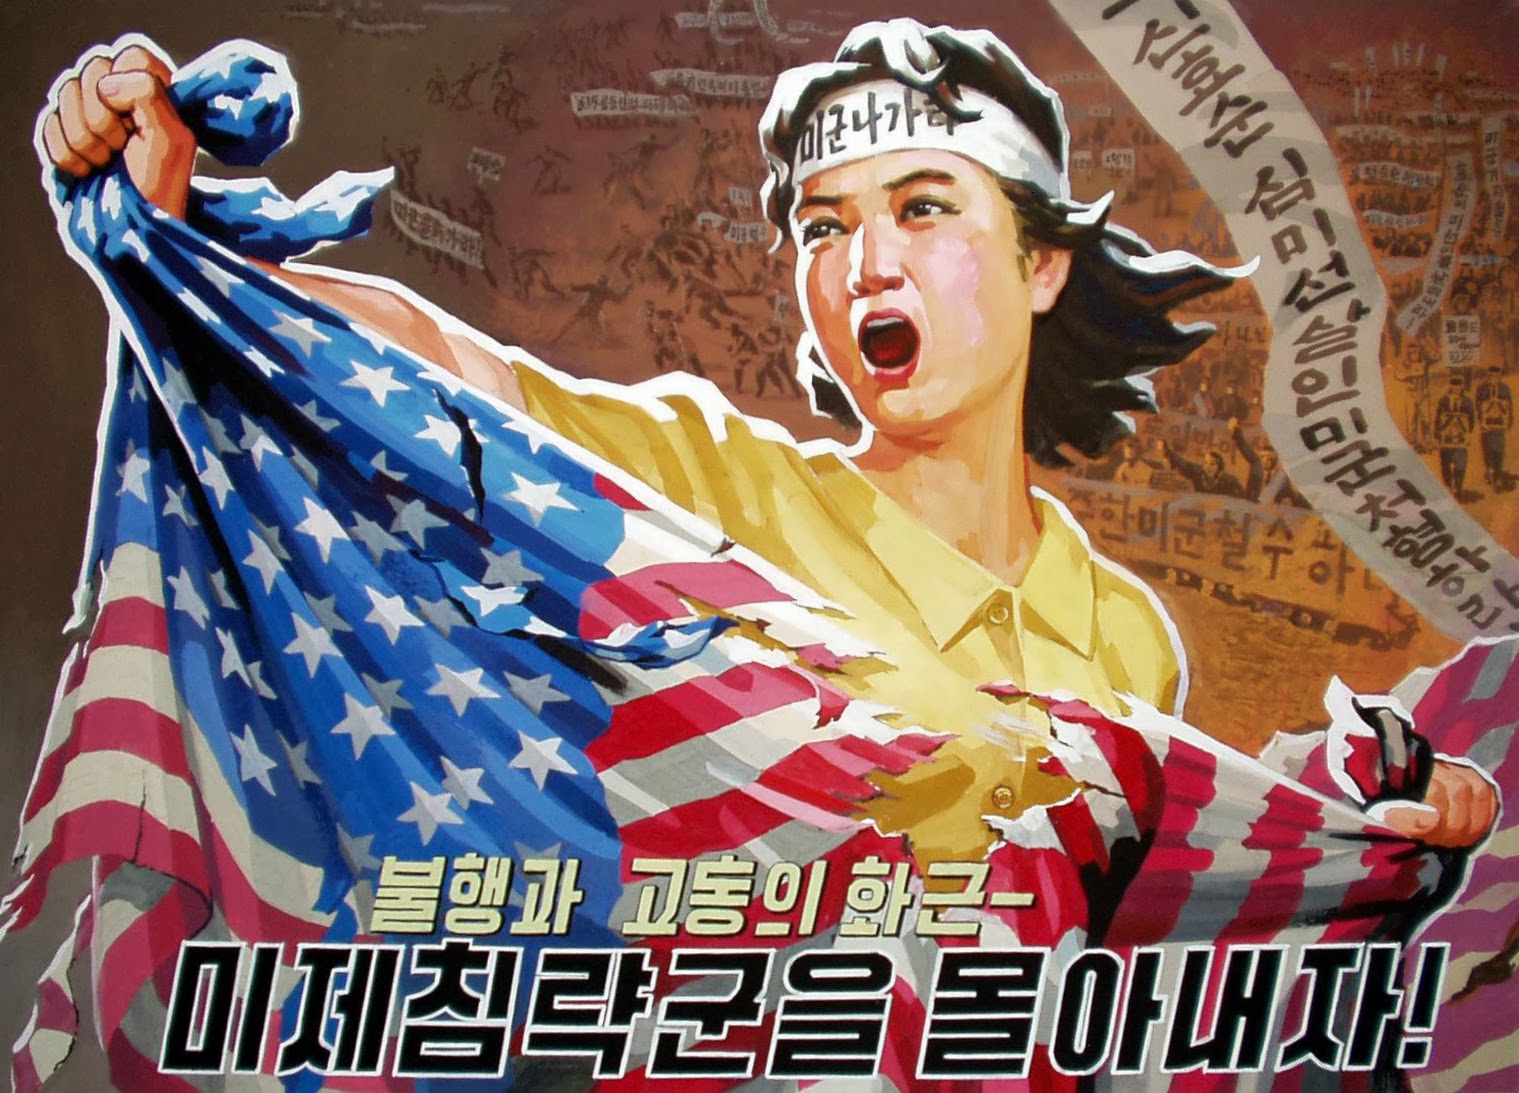 North Korea Propaganda anti-American